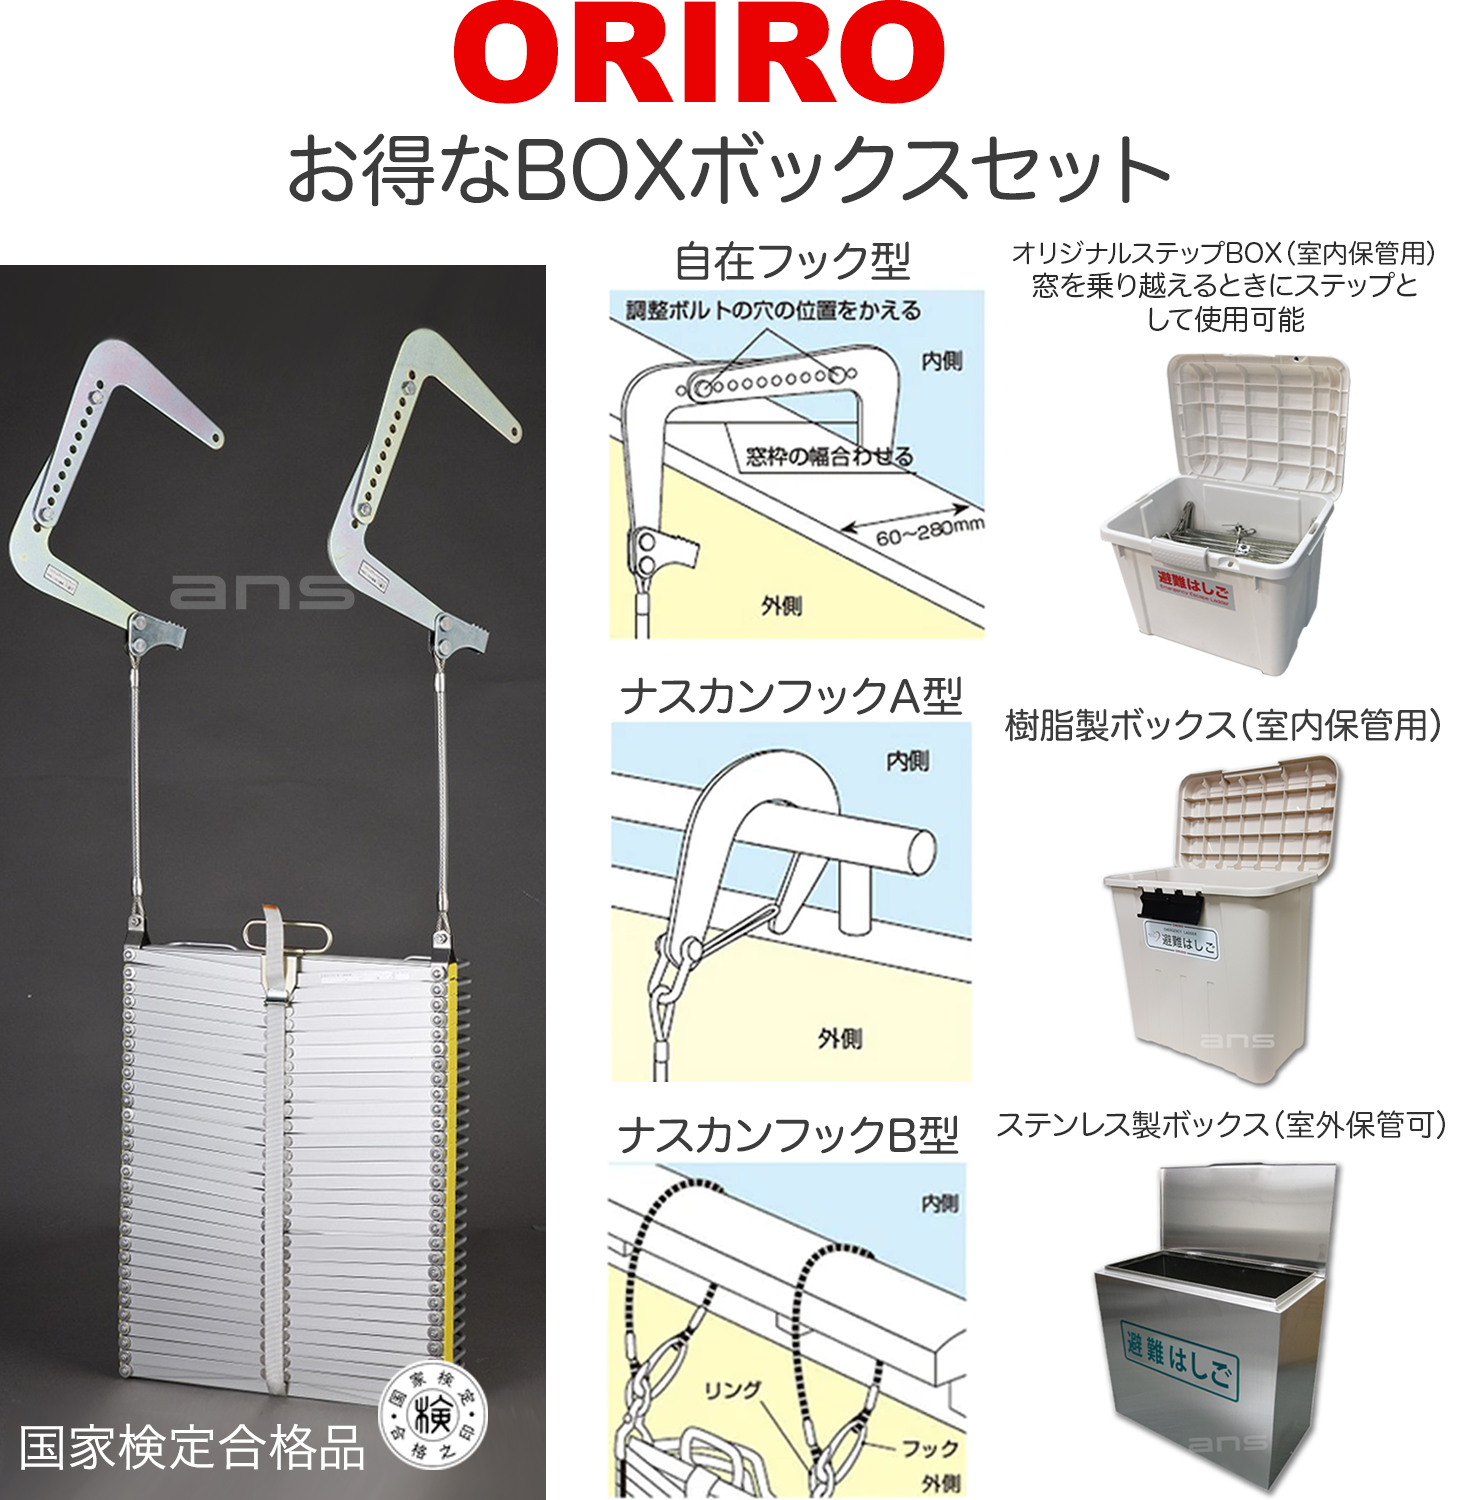 お得なボックスセット。ORIROアルミ製避難はしご 4型 + 収納ボックス。国家検定合格品。設置可能範囲の高さ：自在フック4,540mmまで　 ナスカンA 4,660mmまで　スカンB 4,680mmまで